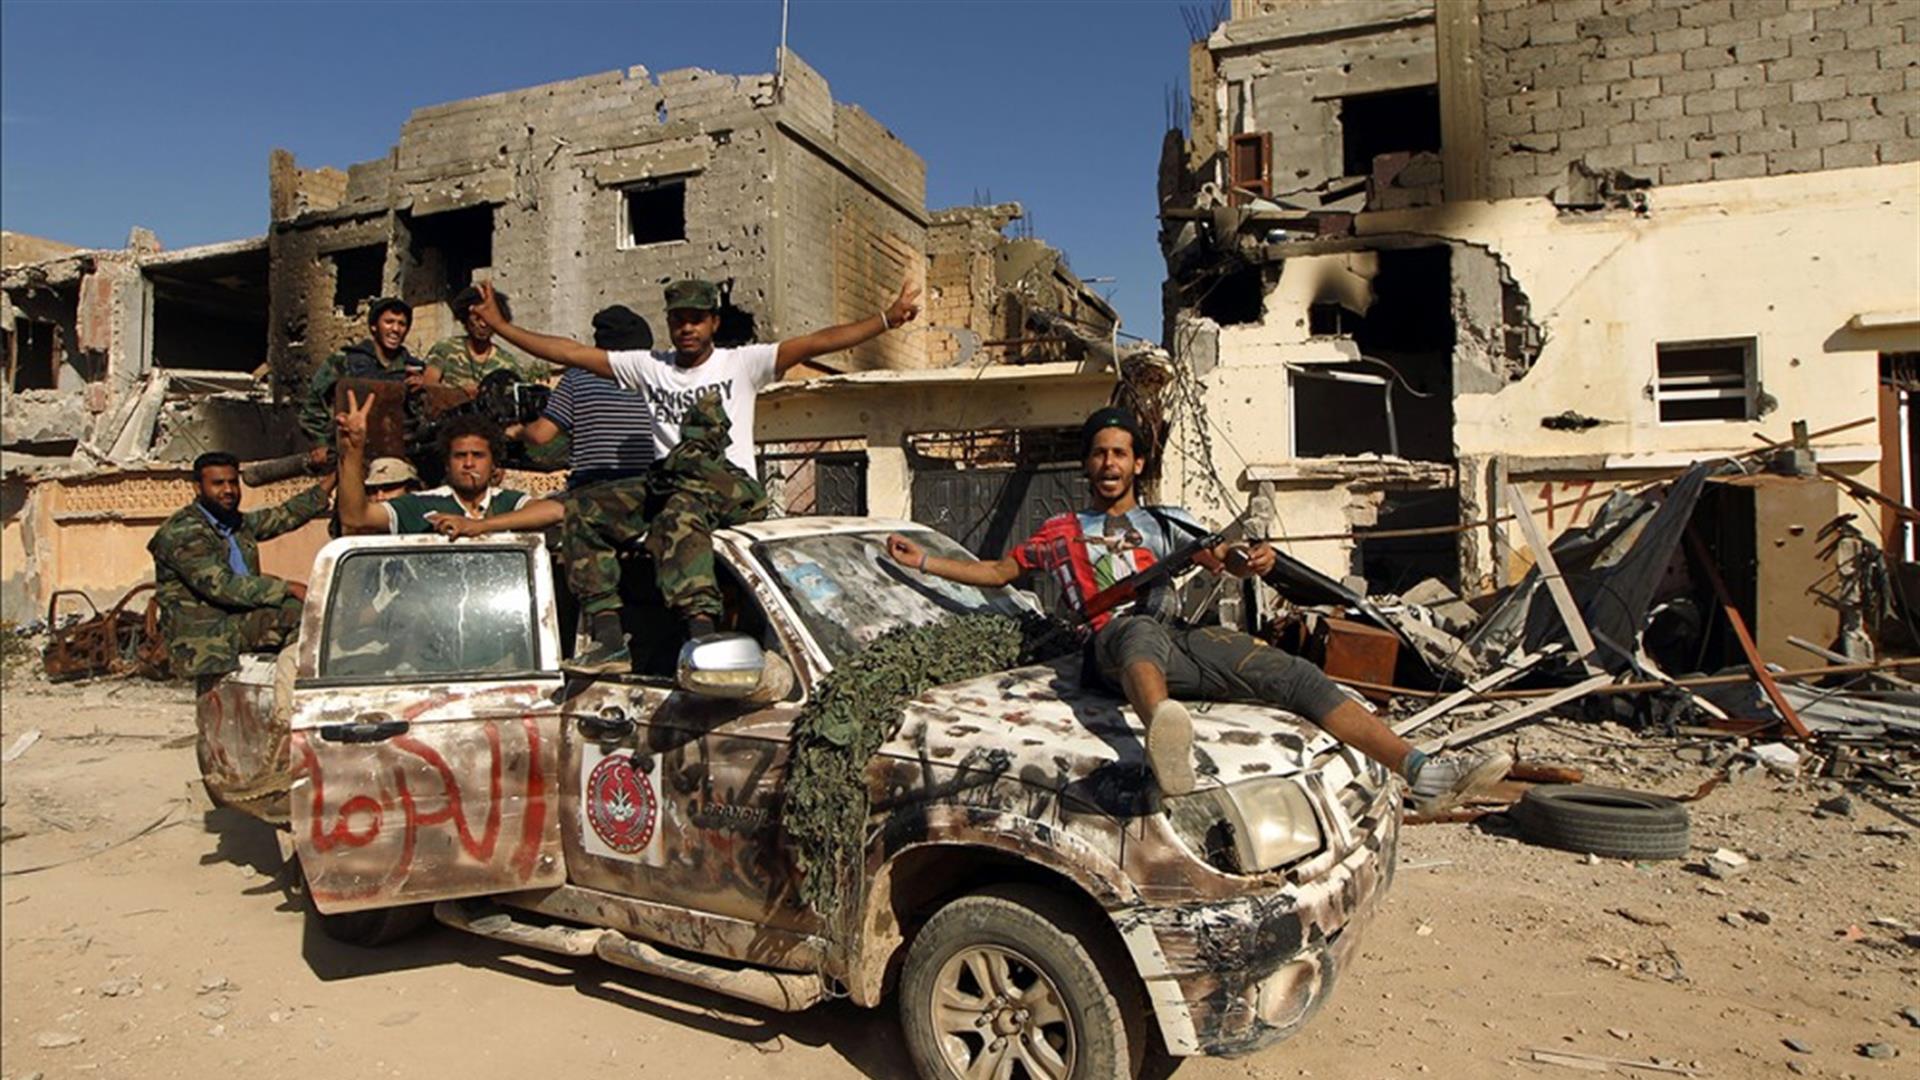 Qual è la soluzione politica più adatta a risolvere la crisi in Libia? Ce lo spiega Kamel al-Jatlawi